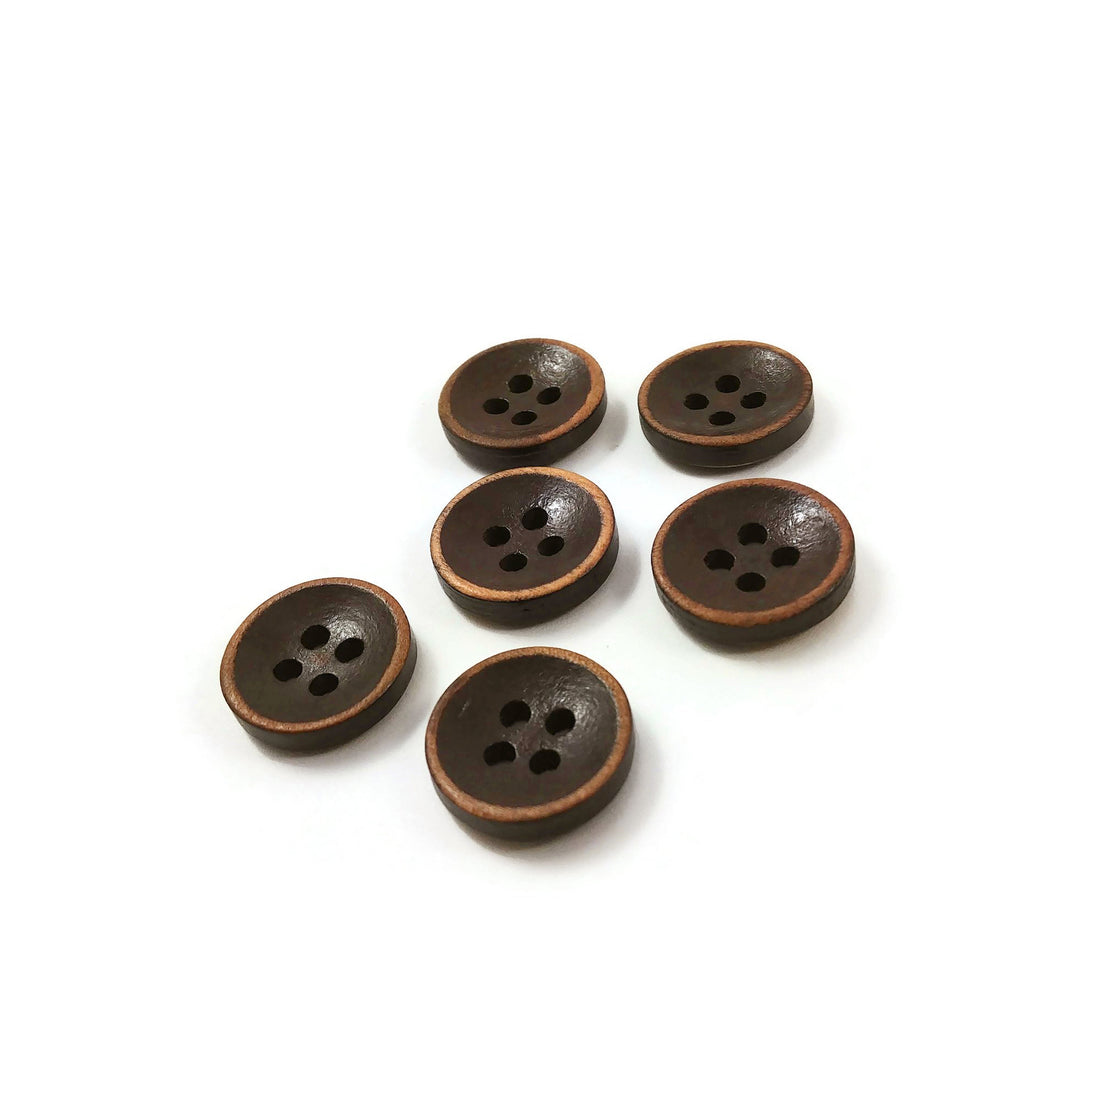 Bouton de bois marron foncé de 1.5cm - ensemble de 6 boutons